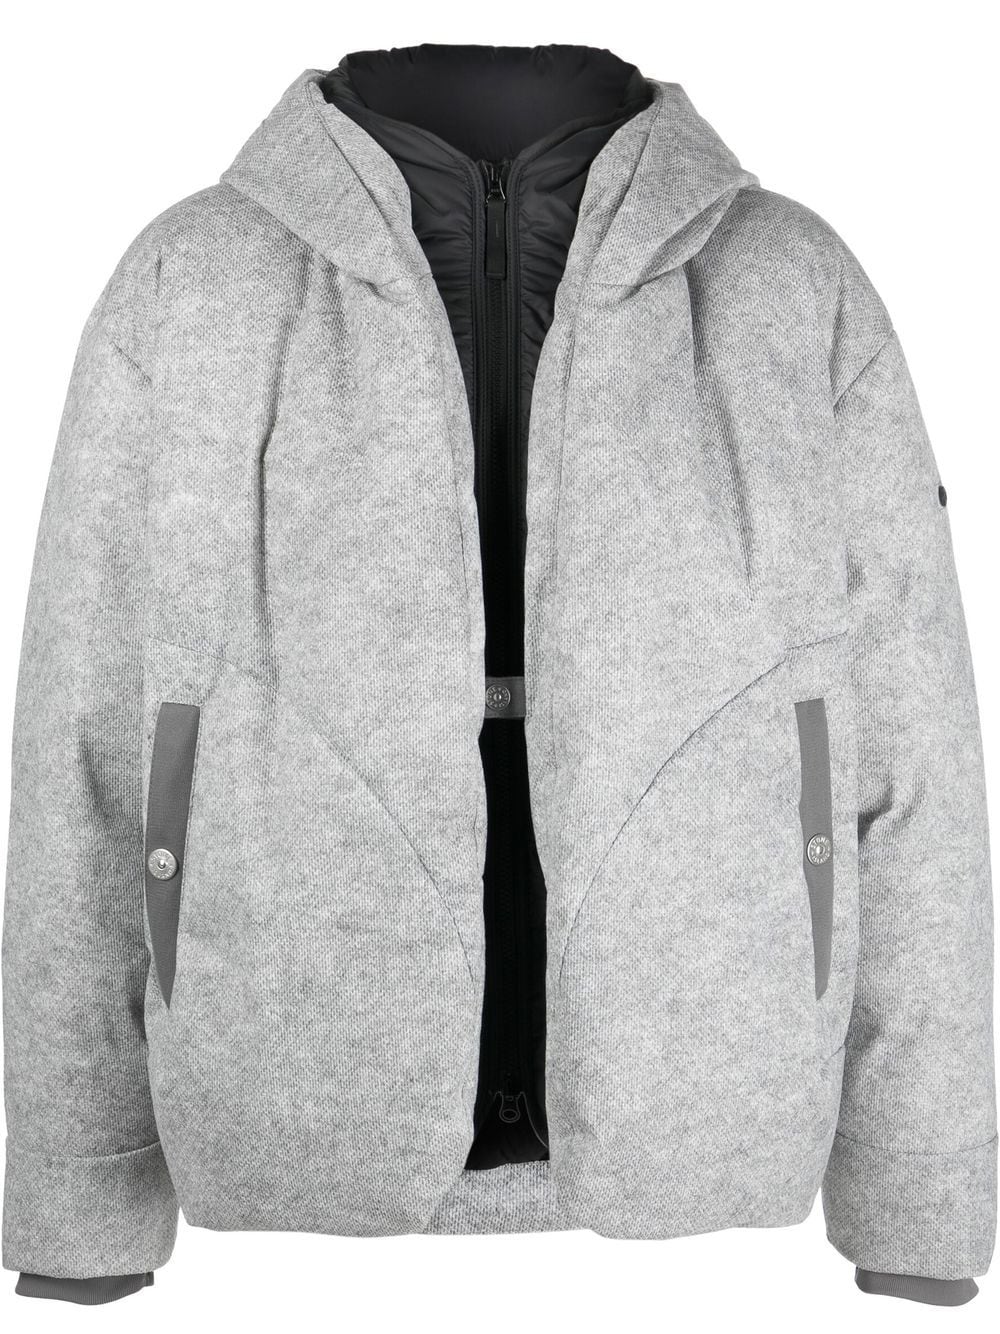 STONE ISLAND SHADOW PROJECT Layered Hooded Zipped Jacket Ash Grey - MAISONDEFASHION.COM